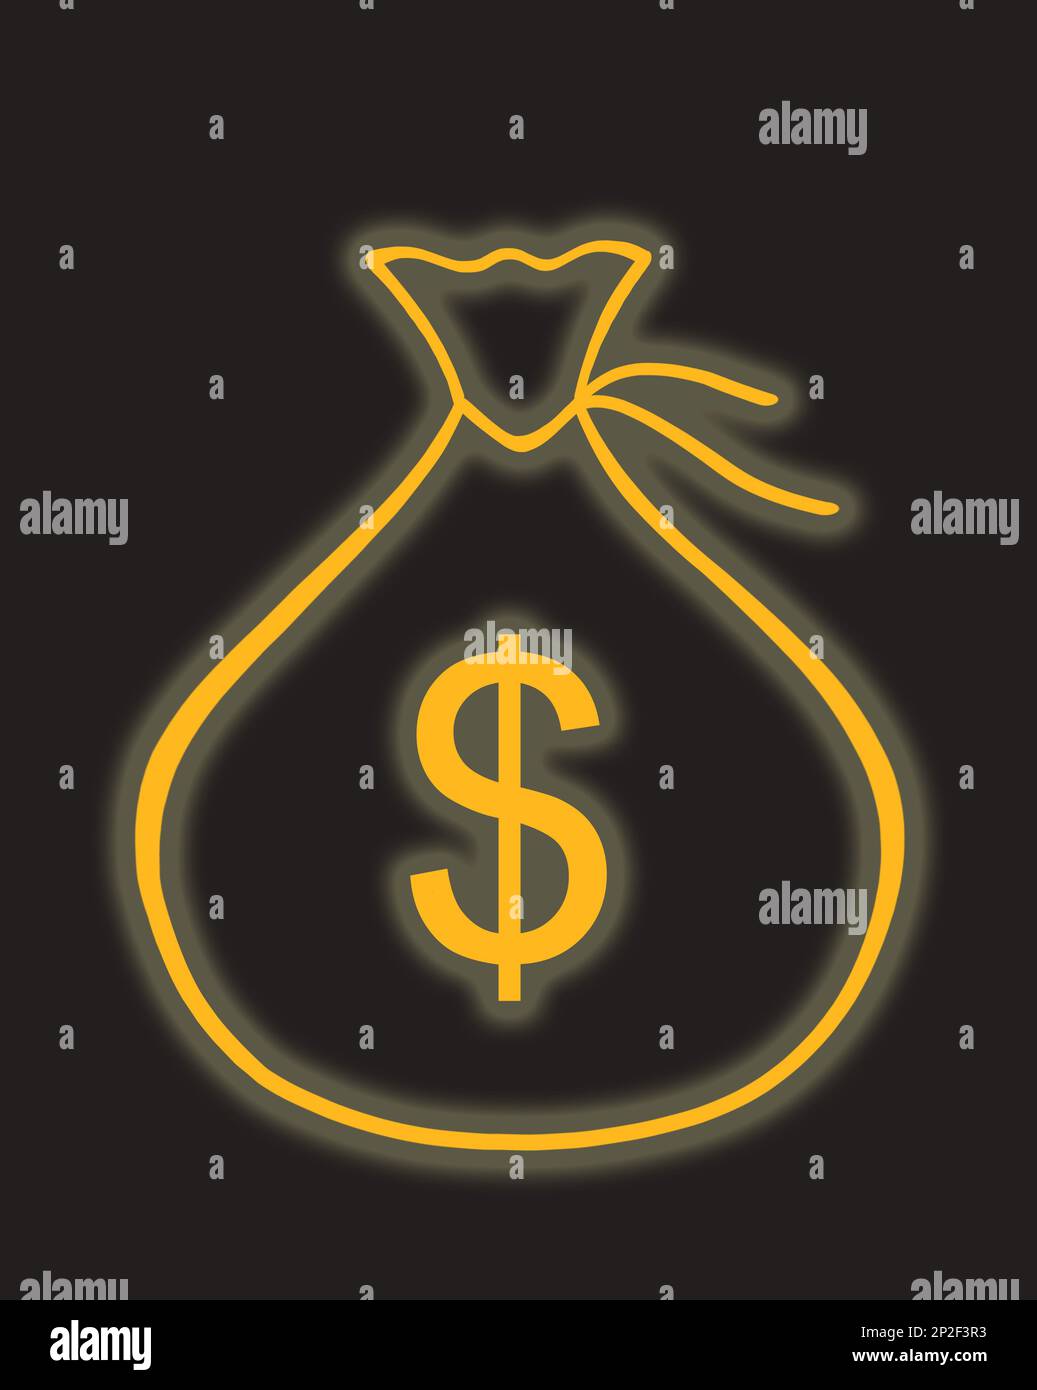 Un sac d'argent avec une pancarte d'argent en dollars américains. La lumière au néon brille sur fond noir. Illustration graphique. Banque D'Images